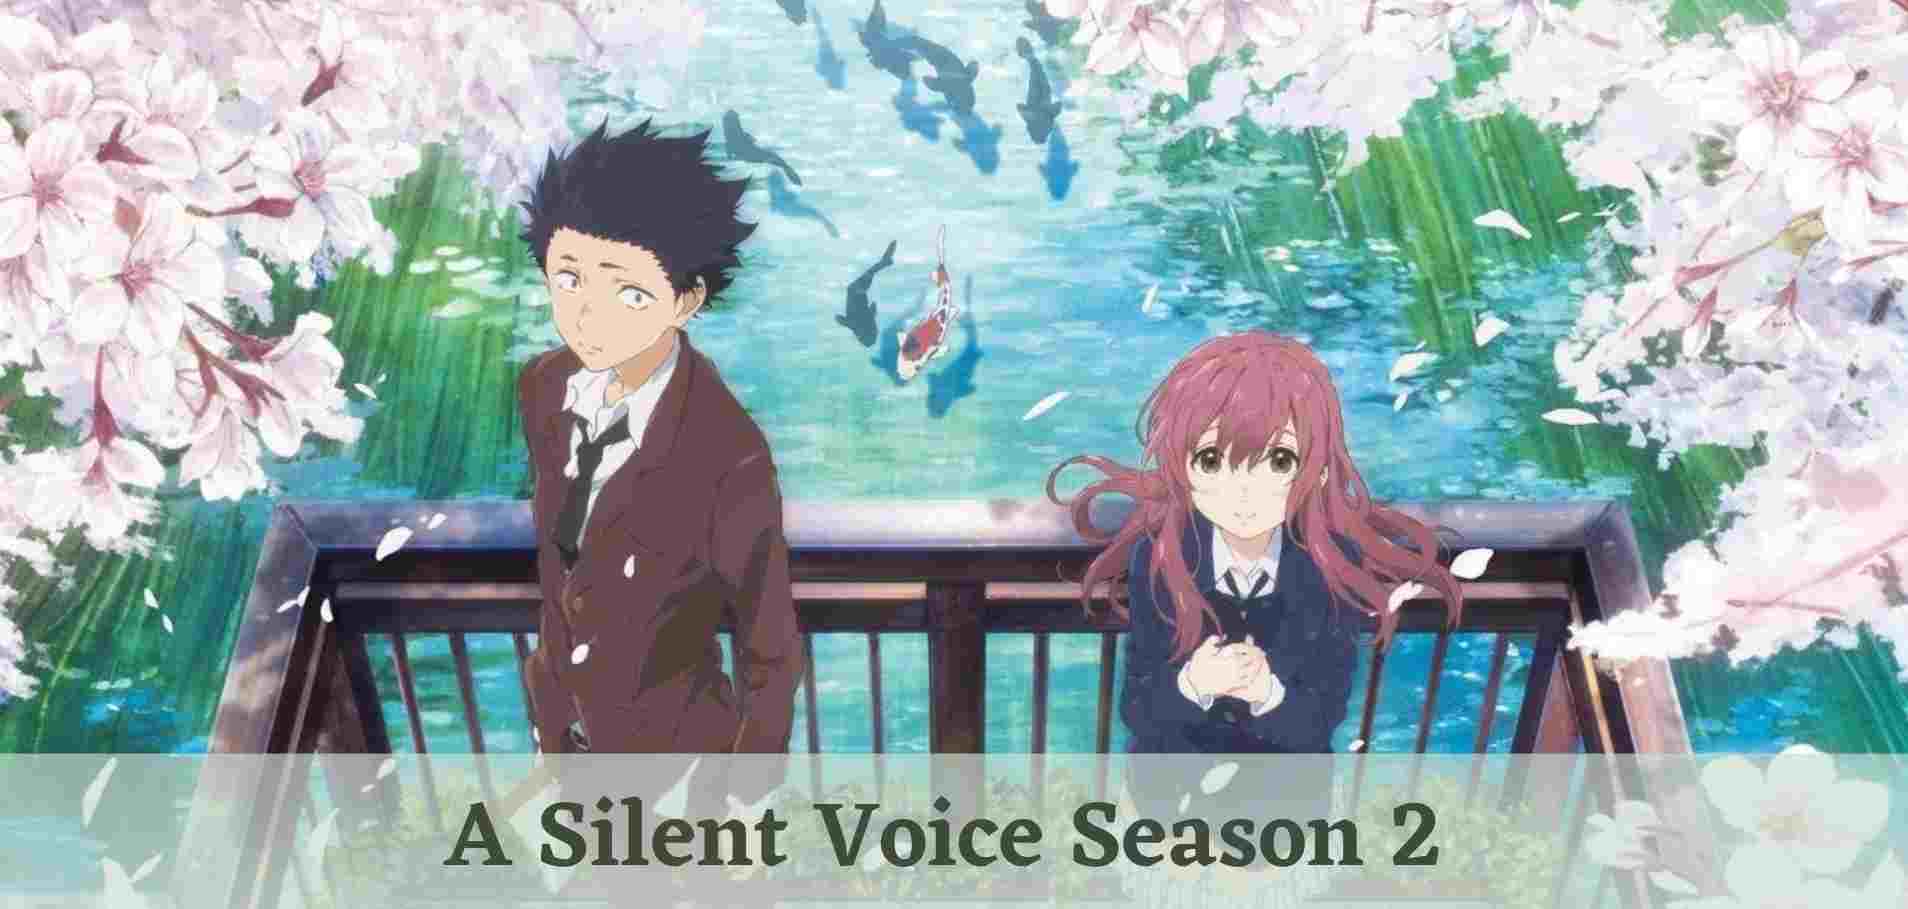 A Silent Voice Season 2